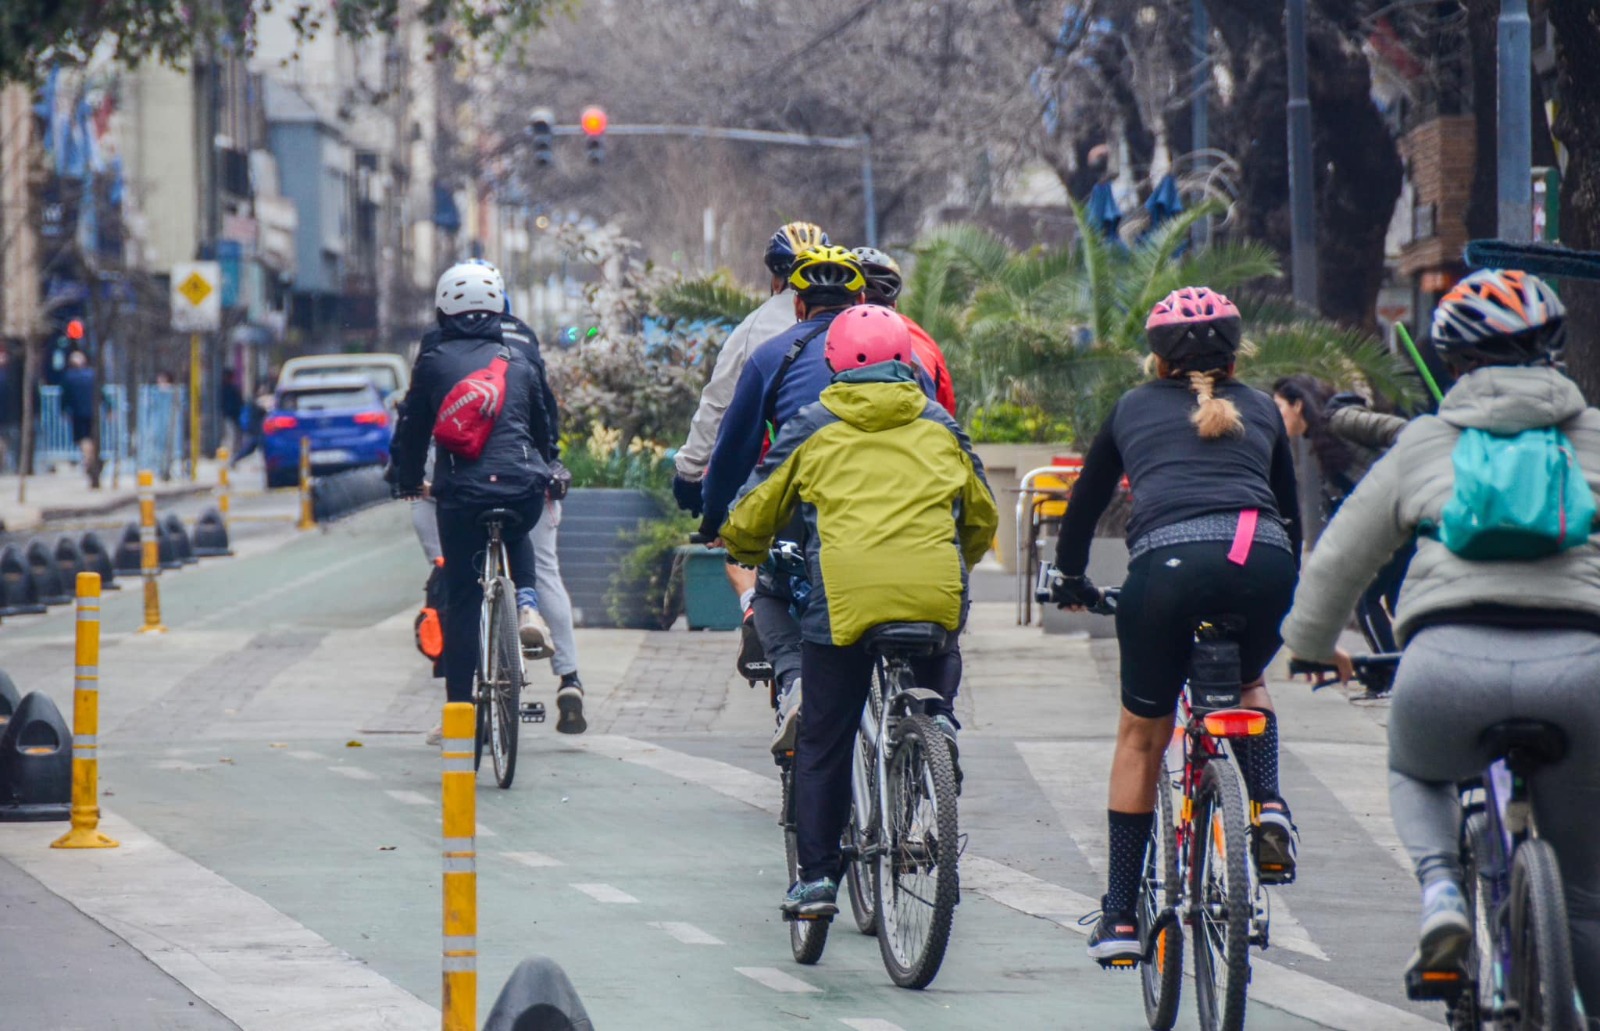 paseo-de-ciclismo-urbano:-un-recorrido-que-invita-andar-por-diferentes-sitios-de-la-ciudad-